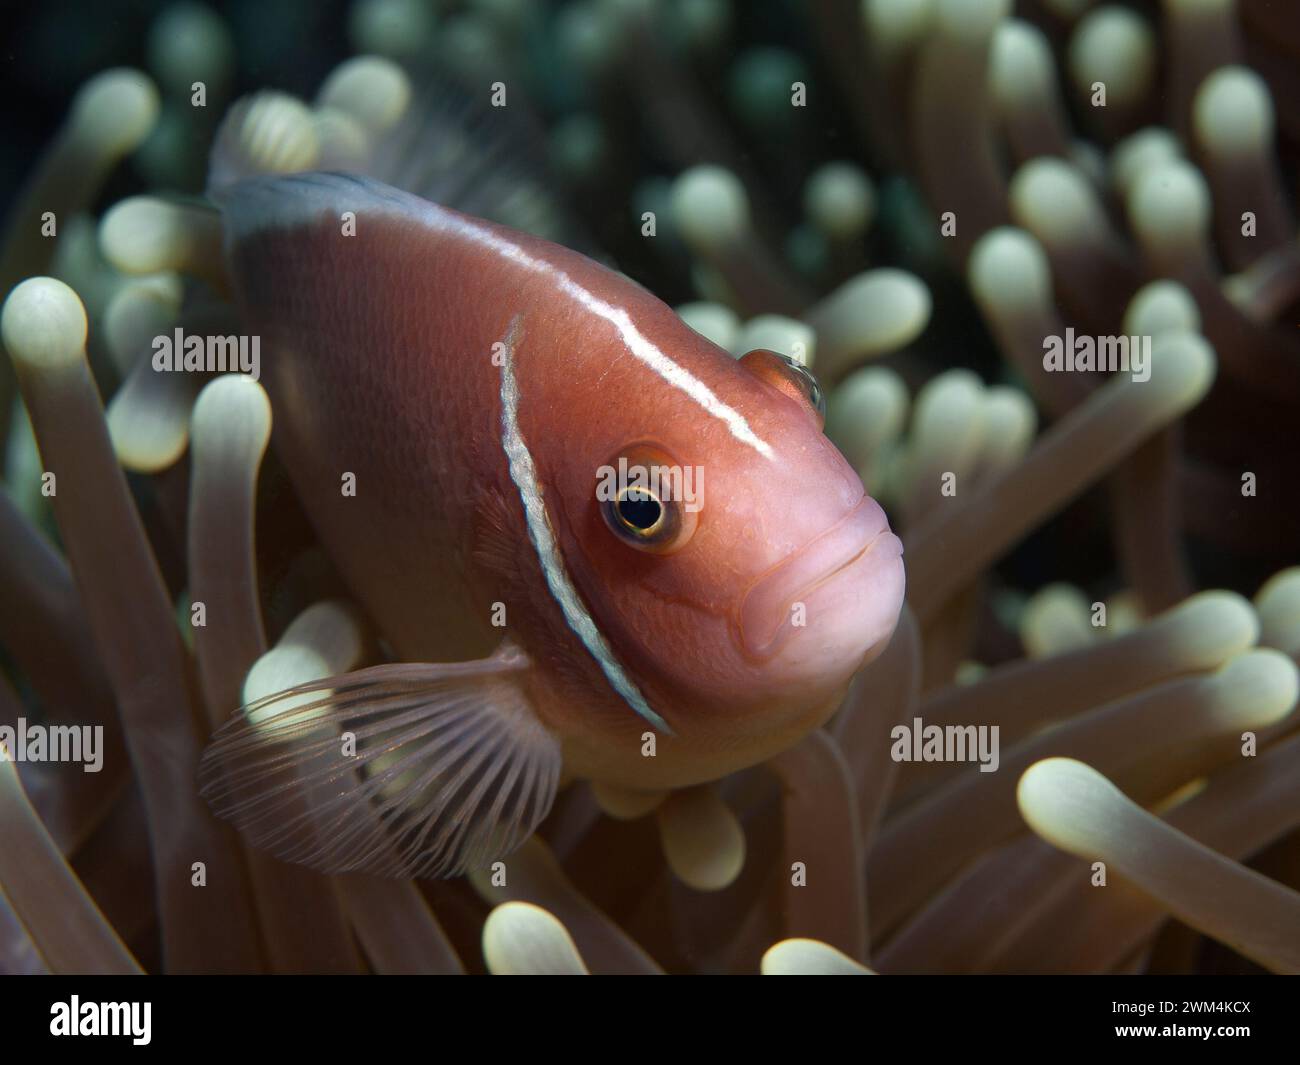 Anemonfische, immer in Bewegung: Clownfish schaut neugierig aus seiner Anemone. Unterwasserfotografie: Korallenriff, Moalboal, Cebu Island, Philippinen Stockfoto